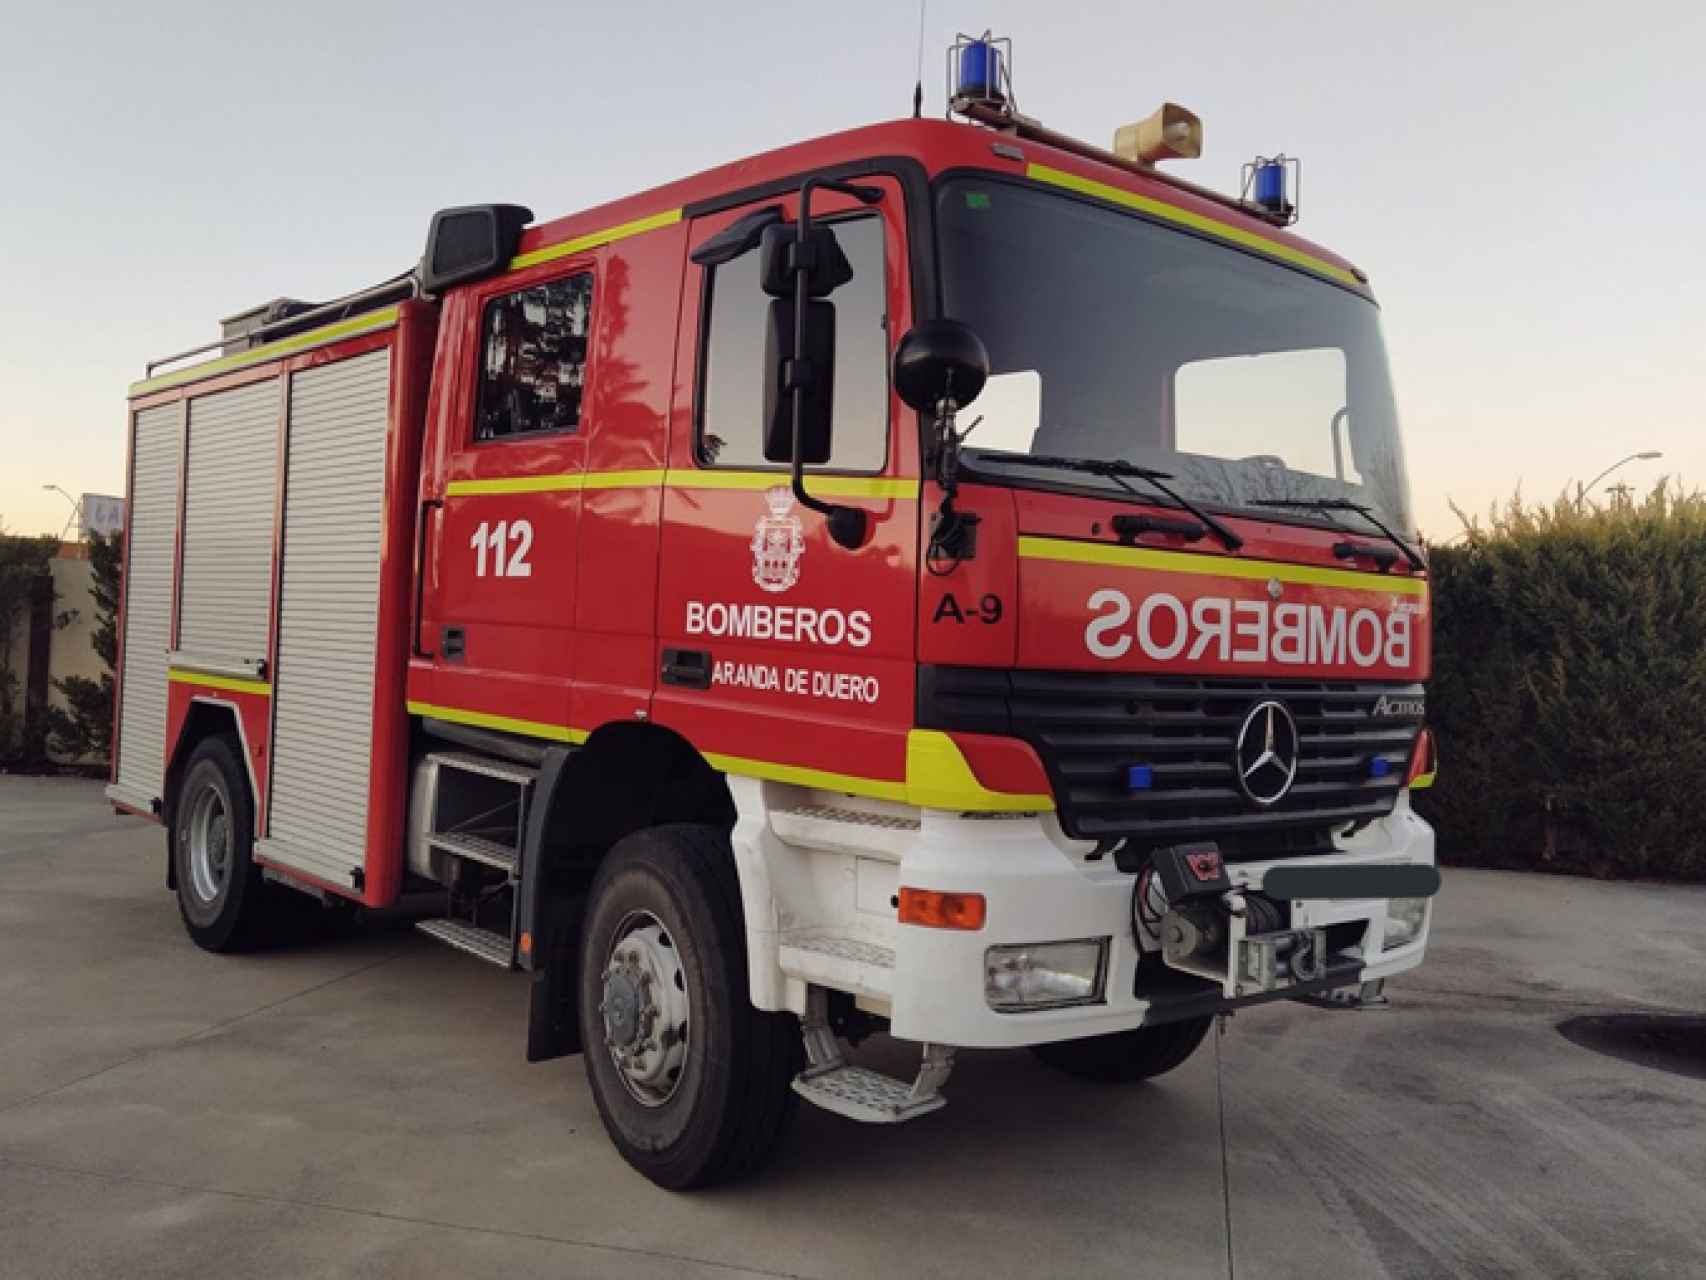 Imagen de archivo de un vehículo de los bomberos de Aranda de Duero.